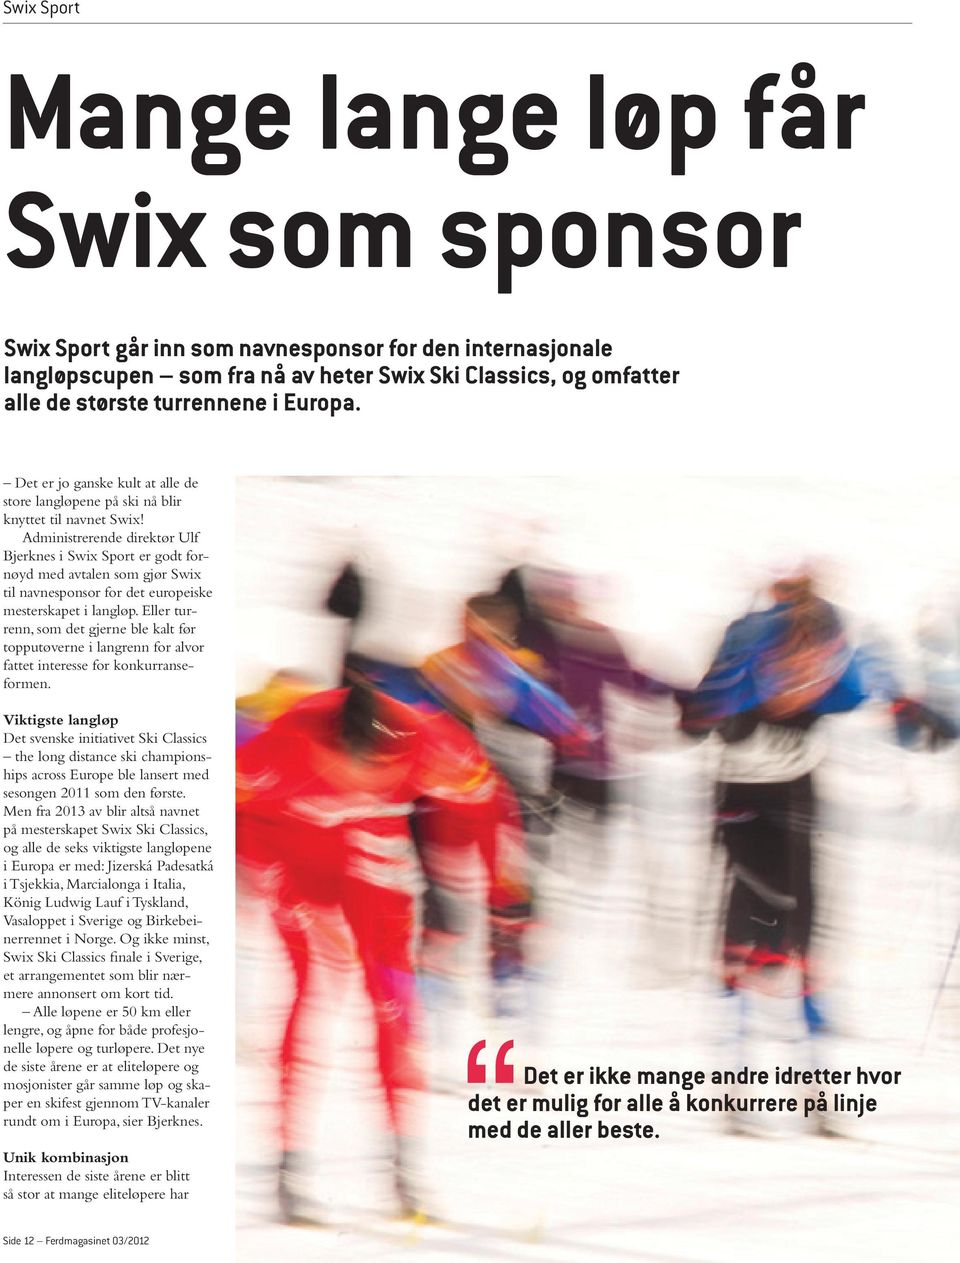 Administrerende direktør Ulf Bjerknes i Swix Sport er godt fornøyd med avtalen som gjør Swix til navnesponsor for det europeiske mesterskapet i langløp.